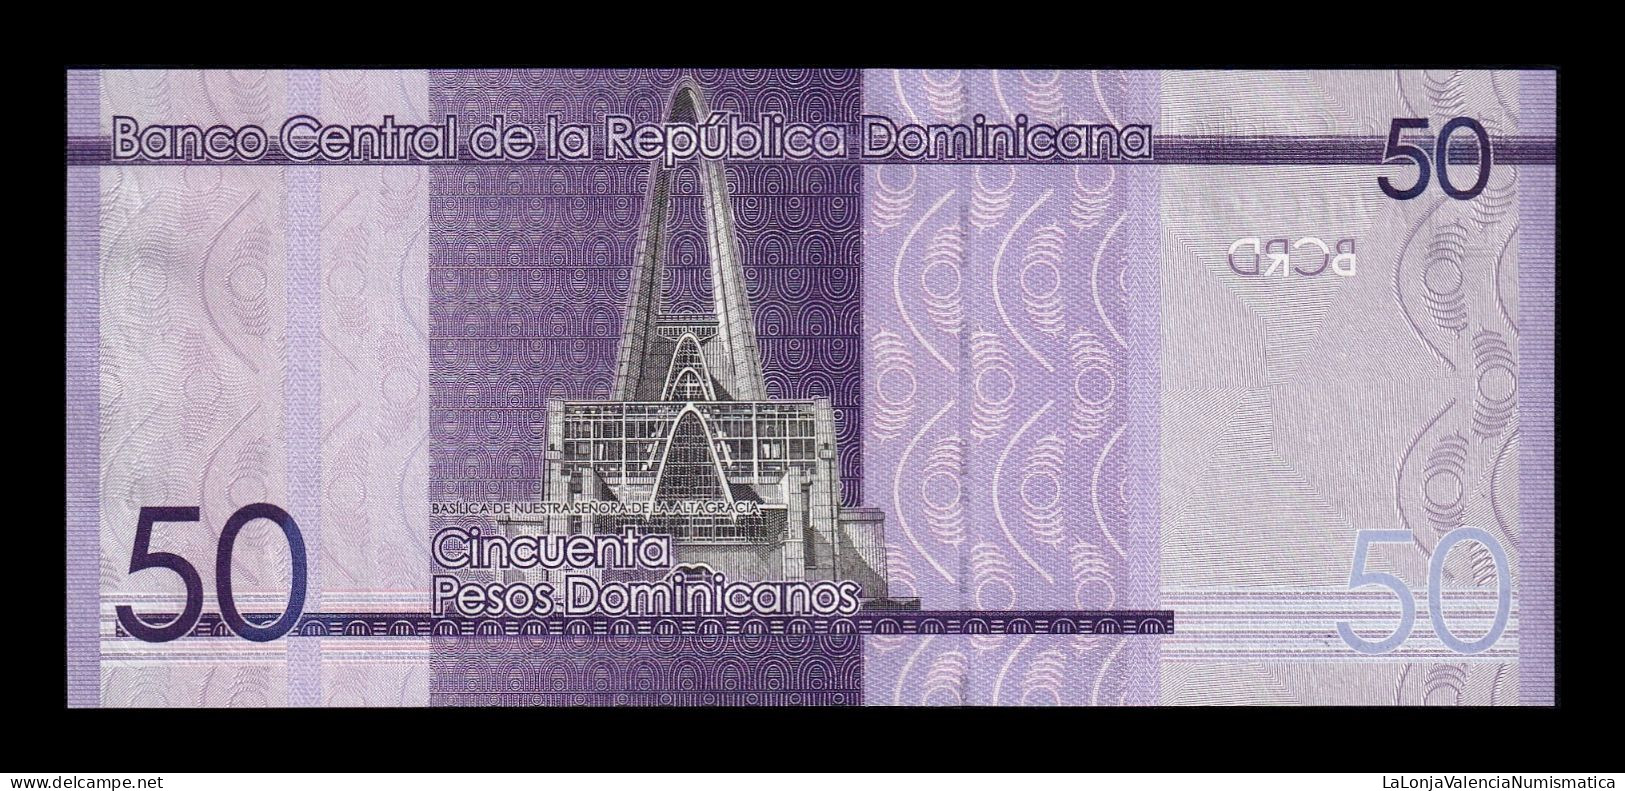 República Dominicana 50 Pesos Dominicanos 2019 Pick 189a Sc Unc - República Dominicana